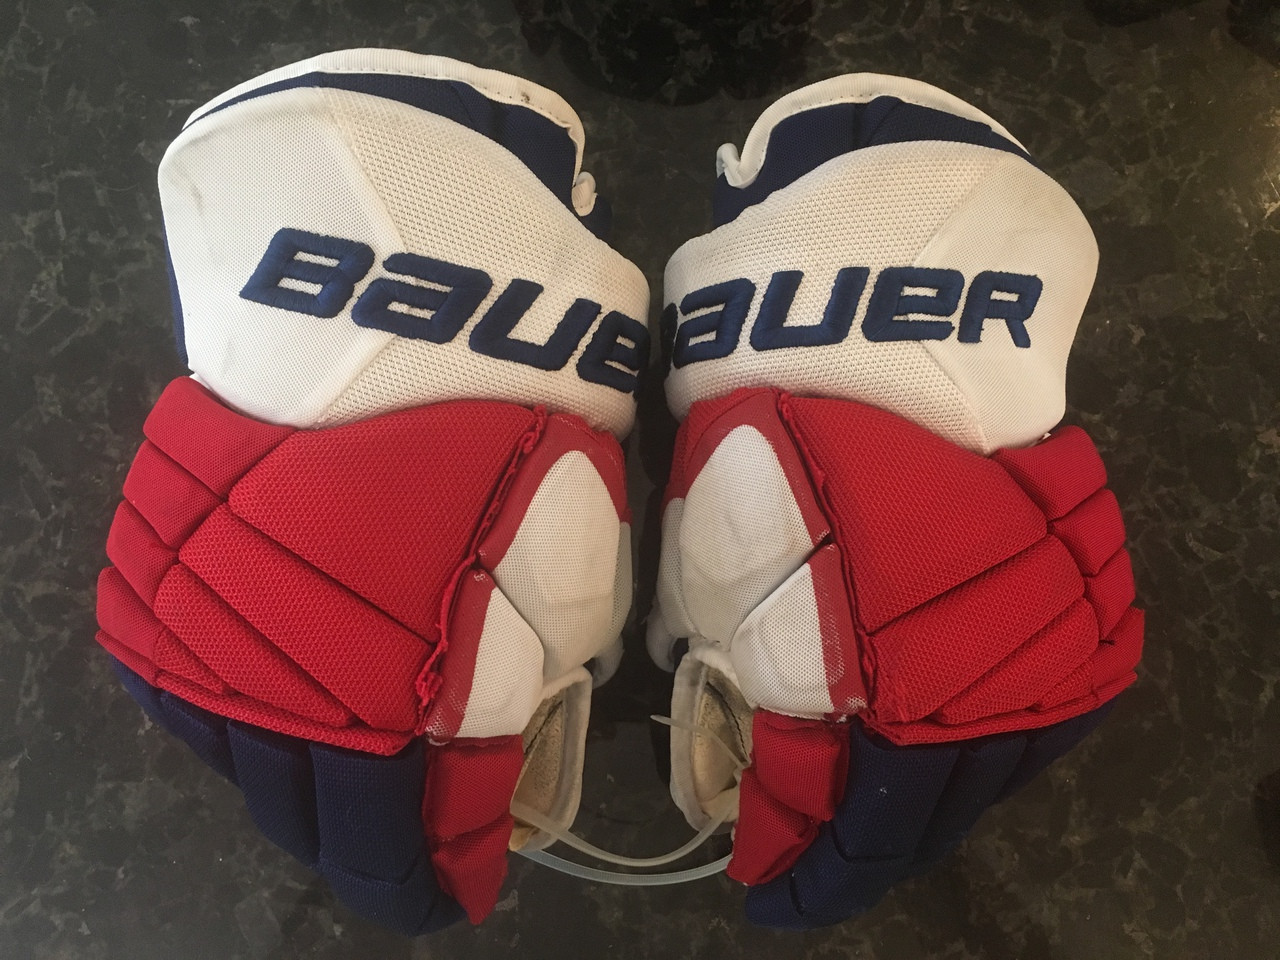 Bauer X60 Pro Stock Custom Hockey Gloves 14" NY Rangers Powe used - DK's  Hockey Shop